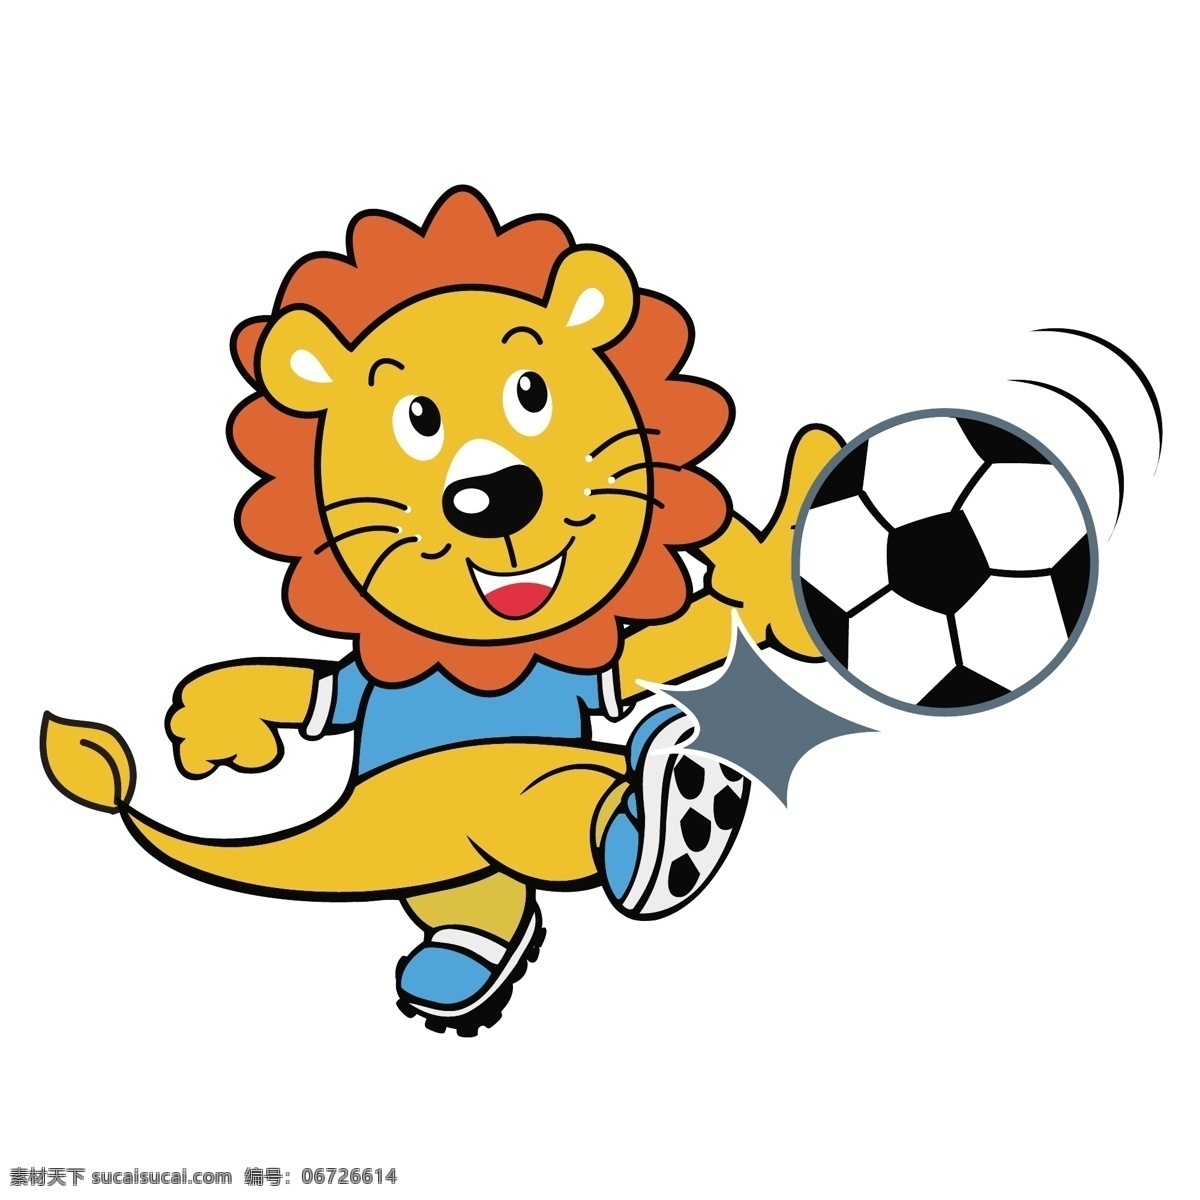 踢 足球 狮子 矢量 可爱 可爱狮子 小狮子 可爱的小狮子 足球运动 运动 踢足球 踢足球运动